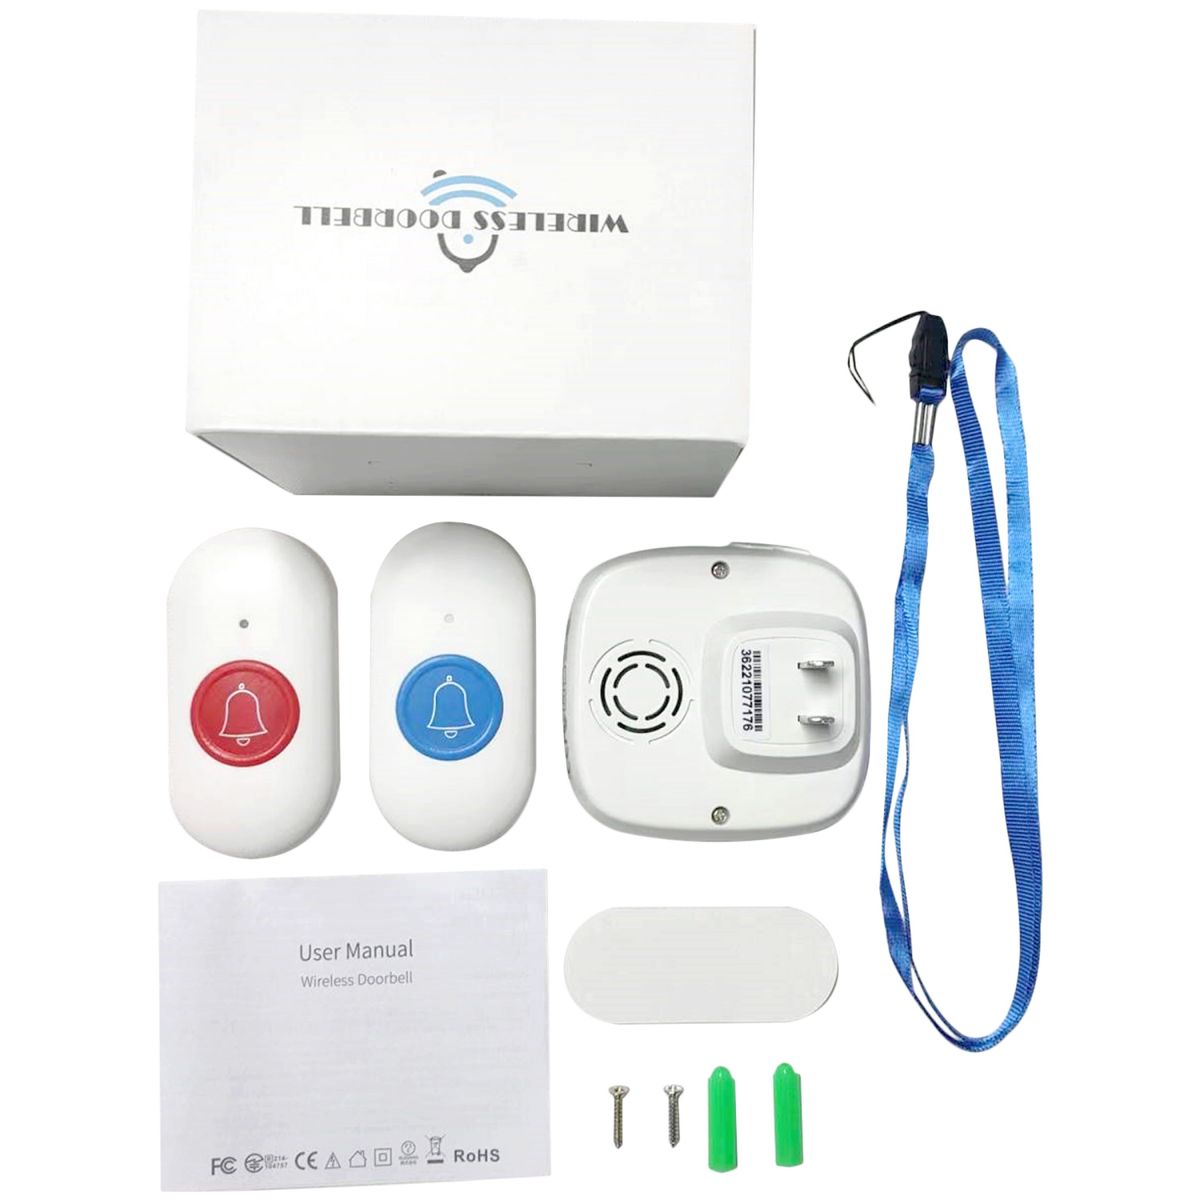 呼び出しワイヤレス コールボタン 介護ベル 電池式携帯しやすい 防水 緊急アラーム 警報 システム 高齢者/妊婦向け